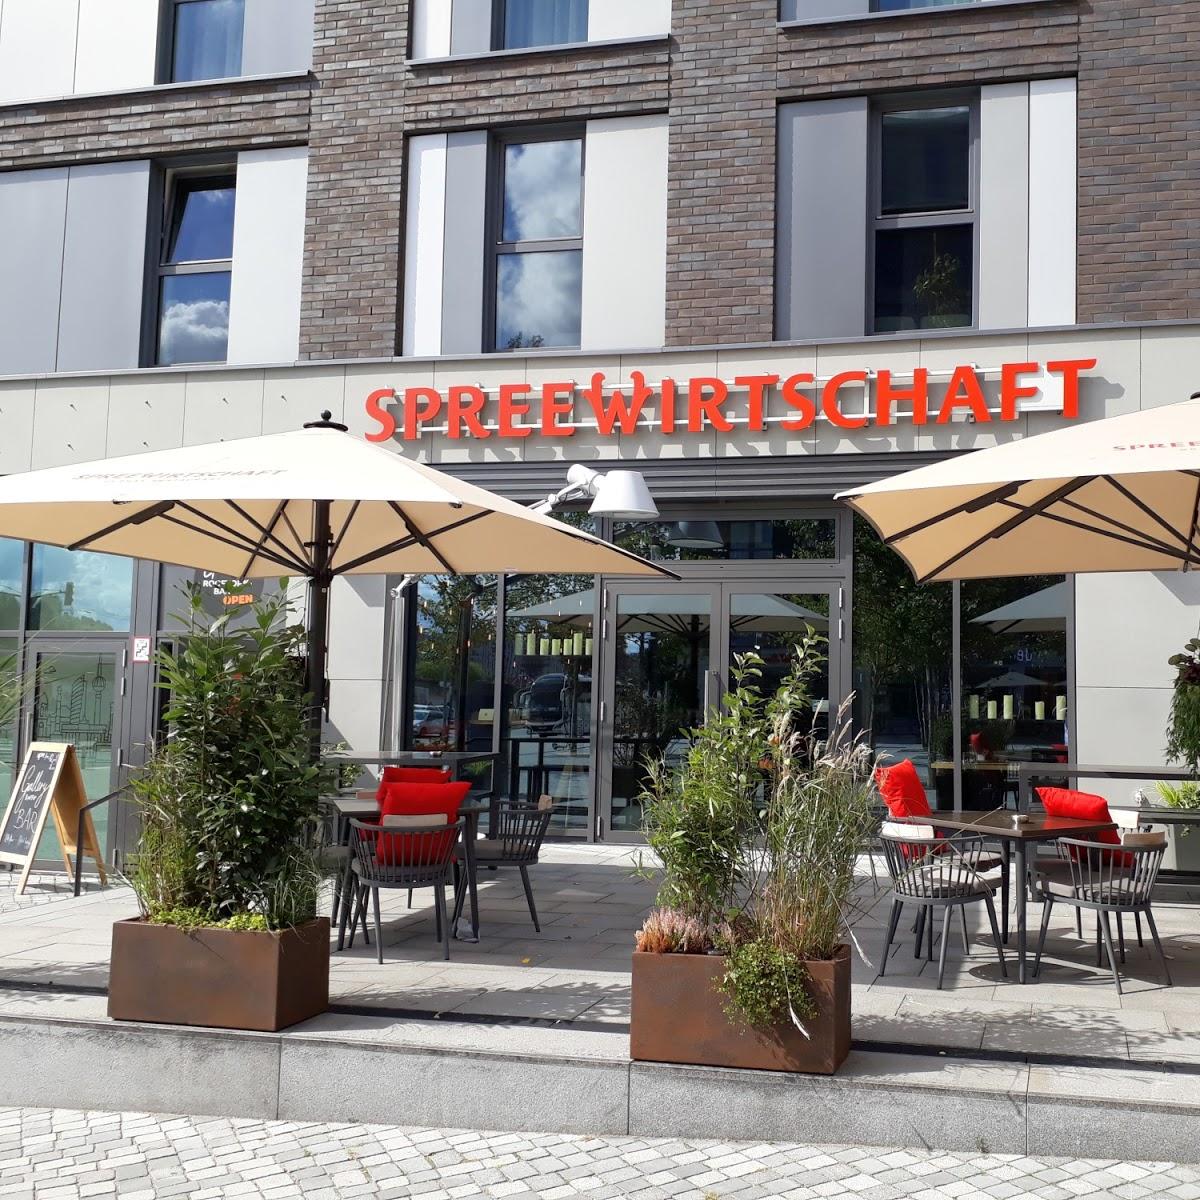 Restaurant "Spreewirtschaft Restaurant" in Berlin